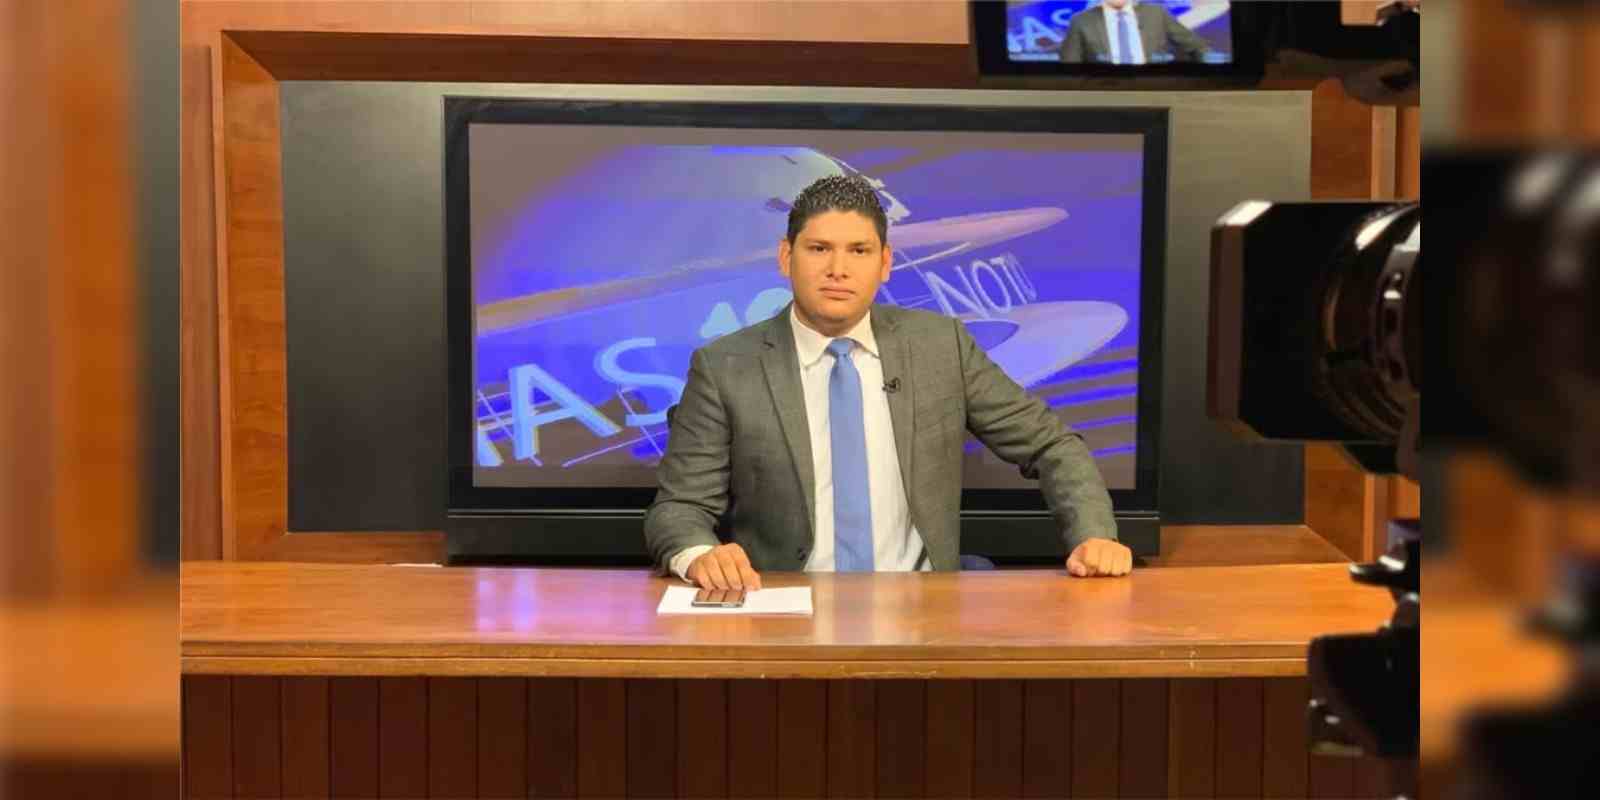 Marcos Medina en 2022 renunció a su cargo como jefe de prensa en Canal 12 por cambios en la política editorial.